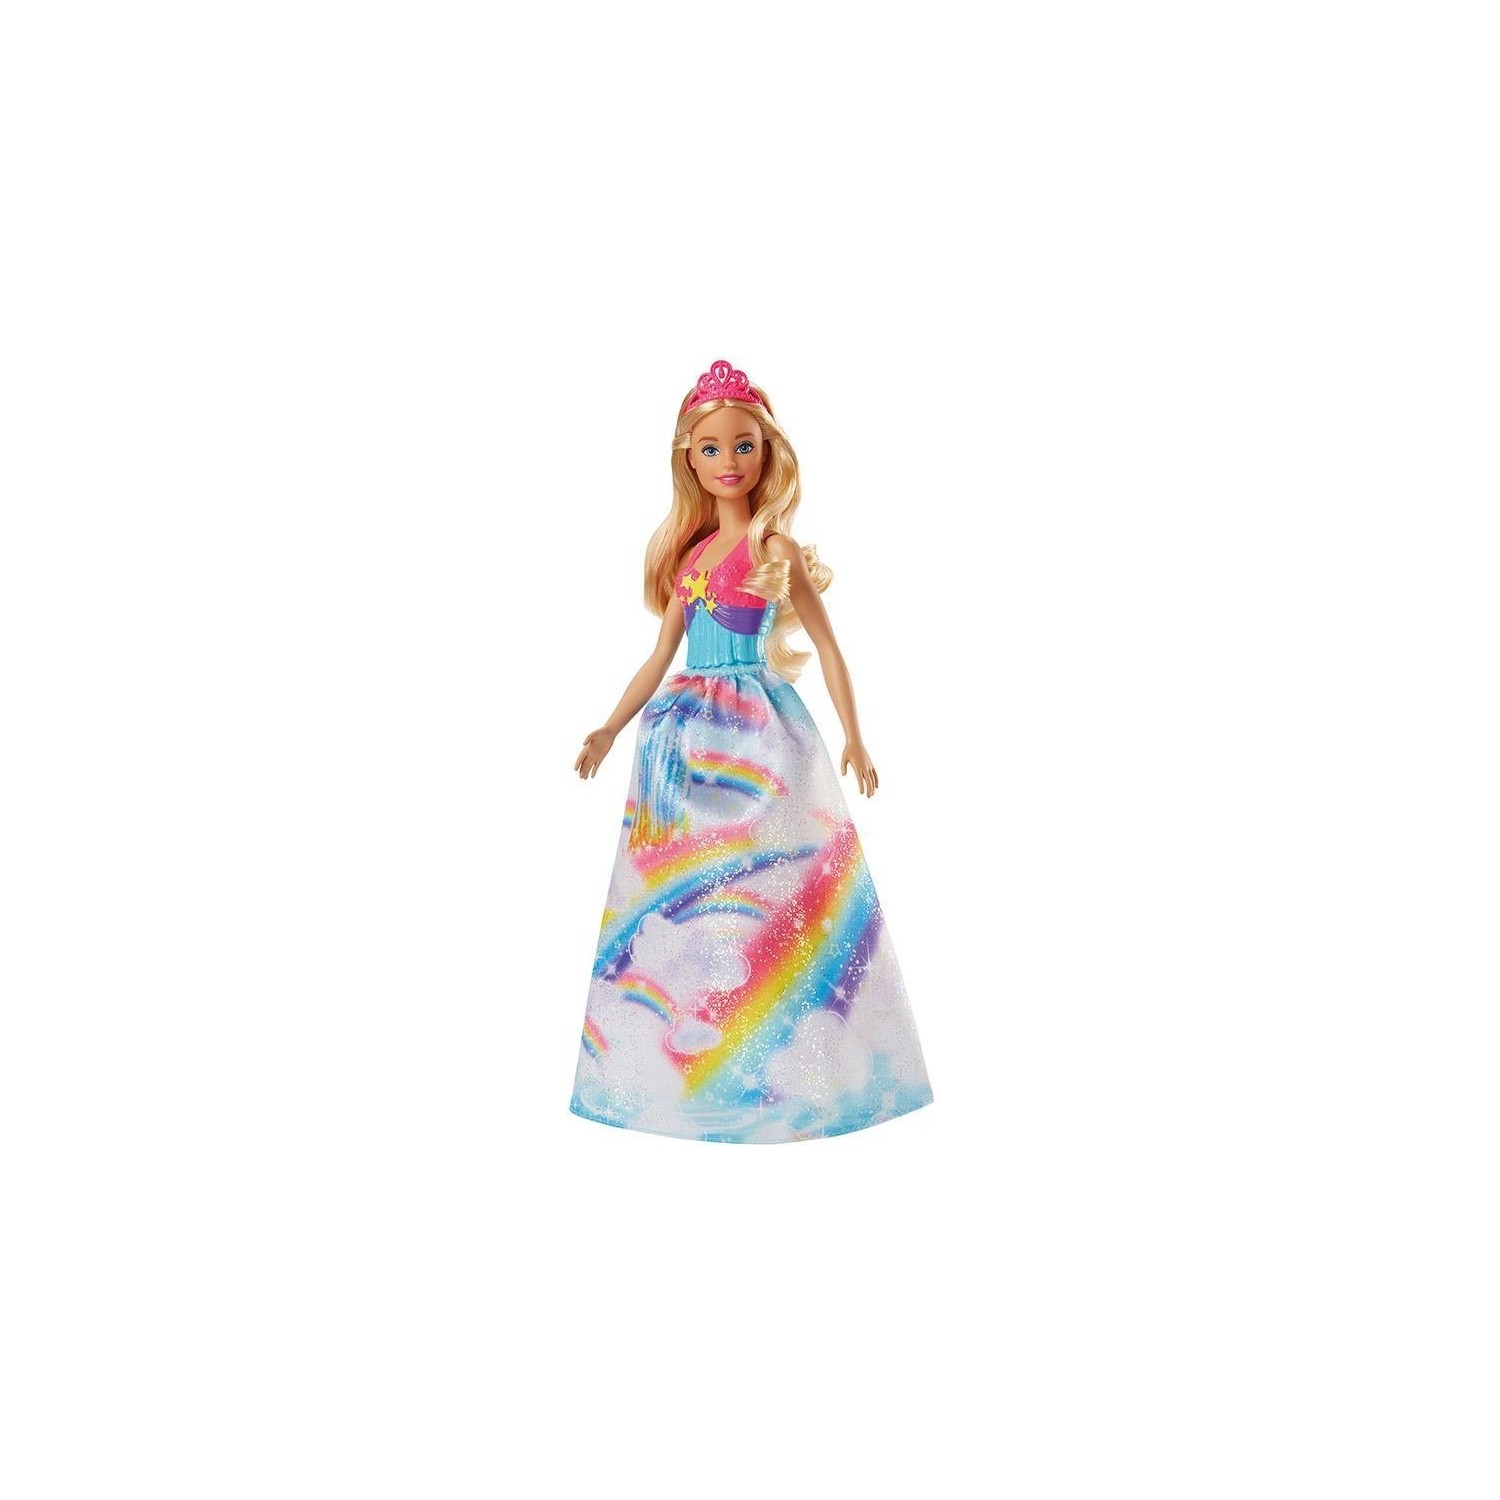 Кукла Barbie Dreamtopia Princess Dolls Fjc94 barbie playset dreamtopia sweetsville